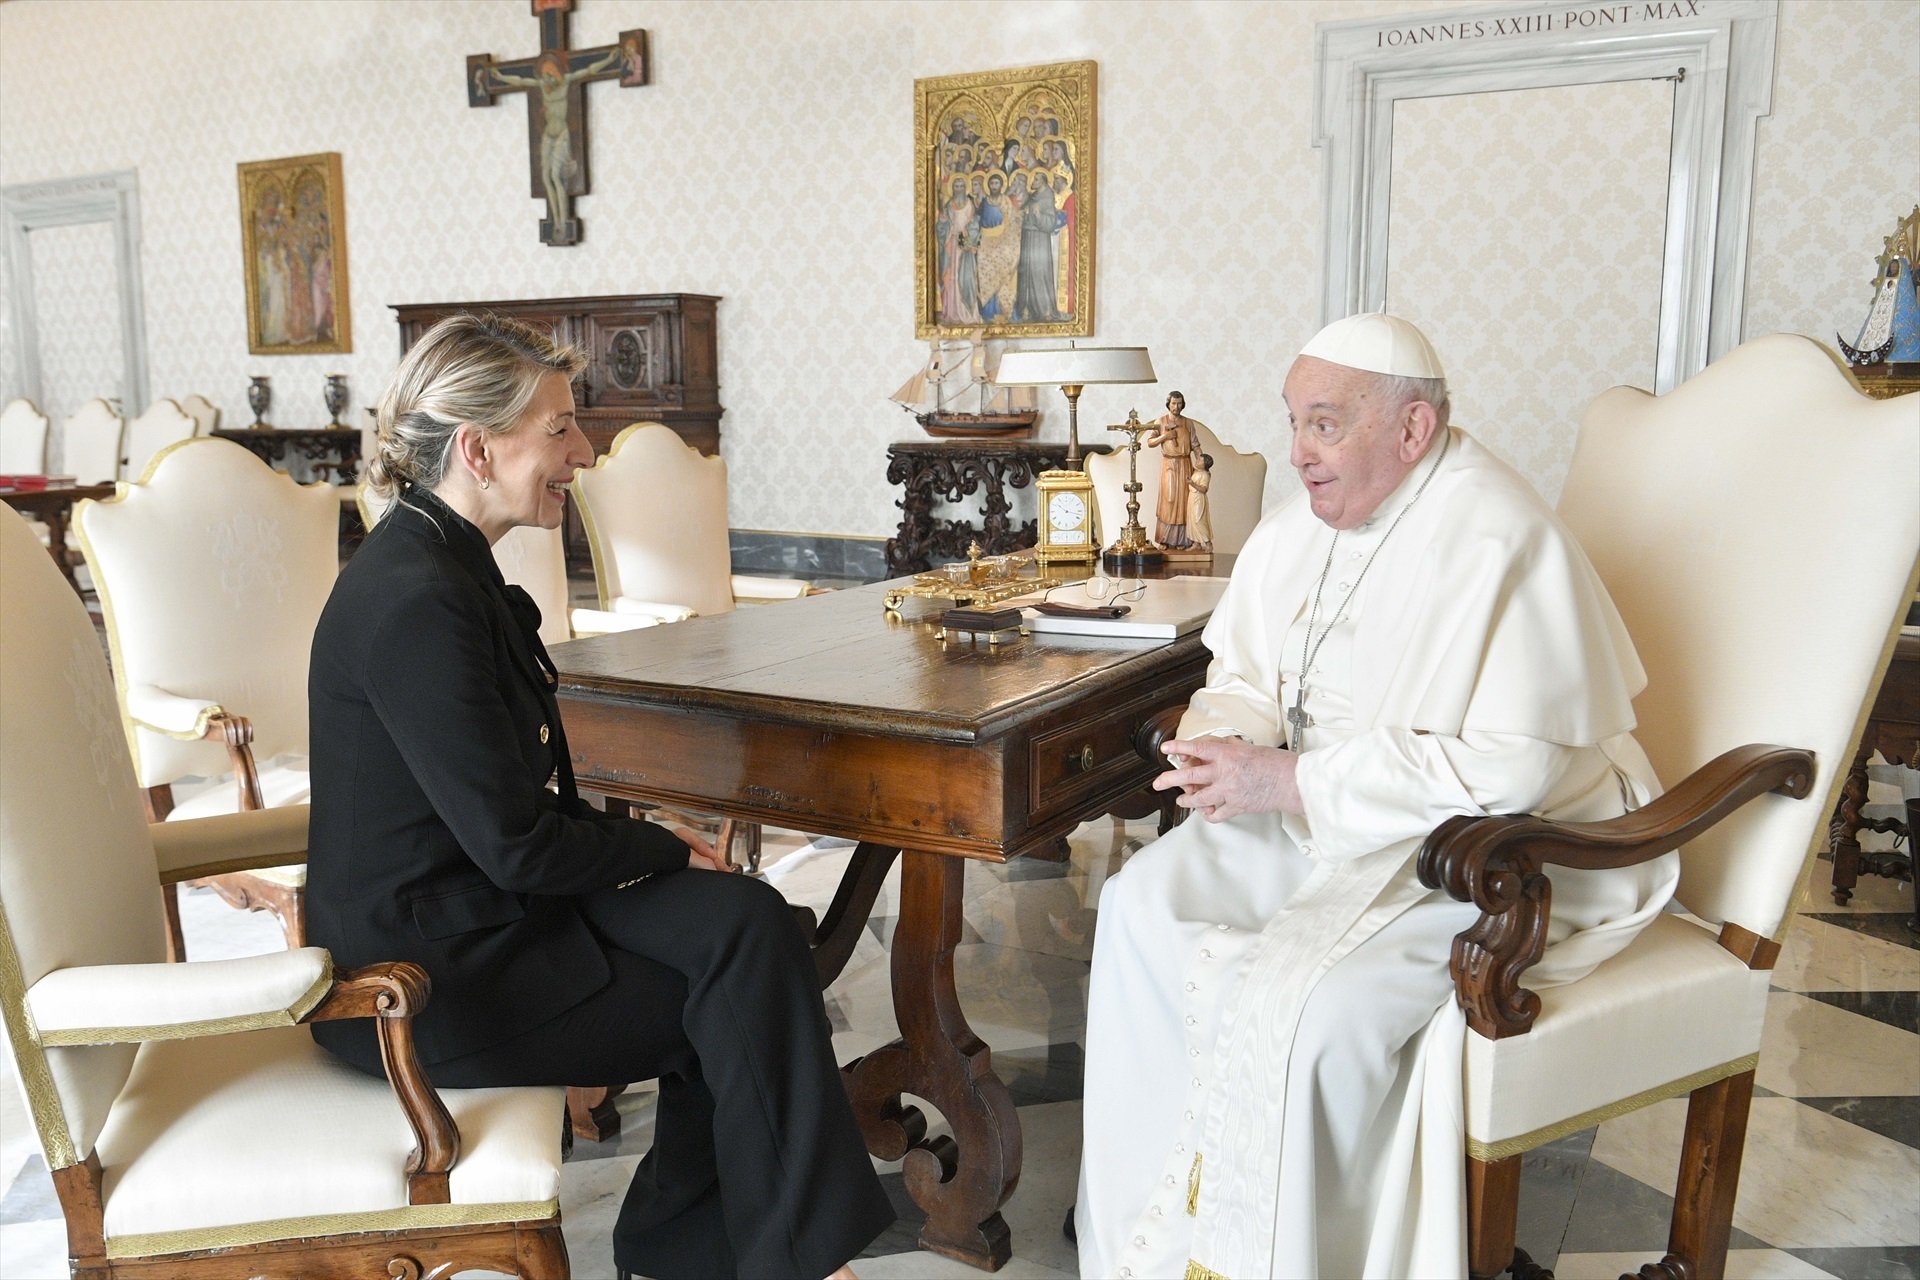 El Papa Francesc, a Yolanda Díaz: "Continúe adelante y no afloje"